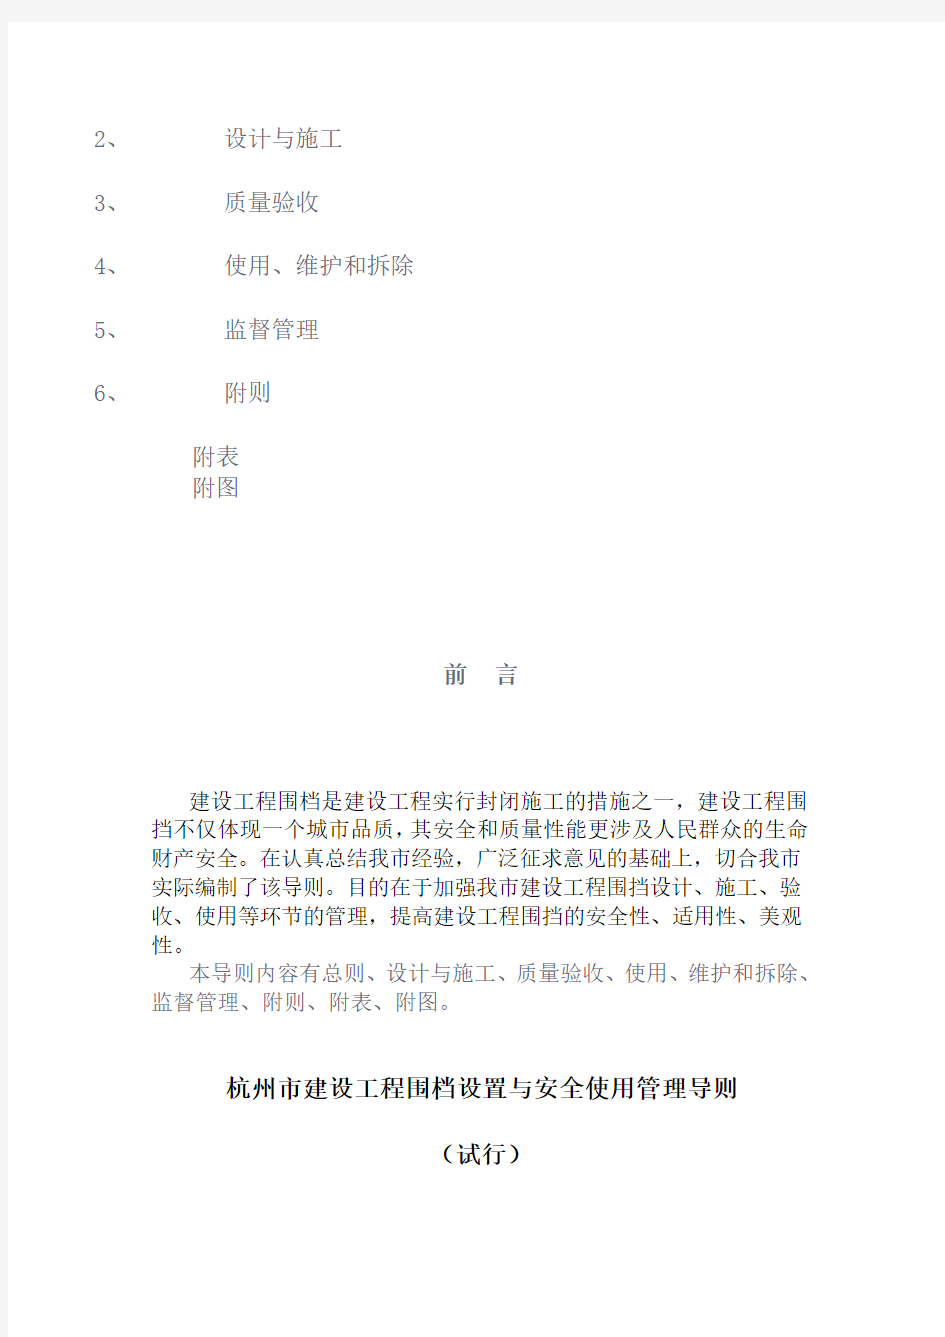 杭州市建设工程围档设置与安全使用管理导则